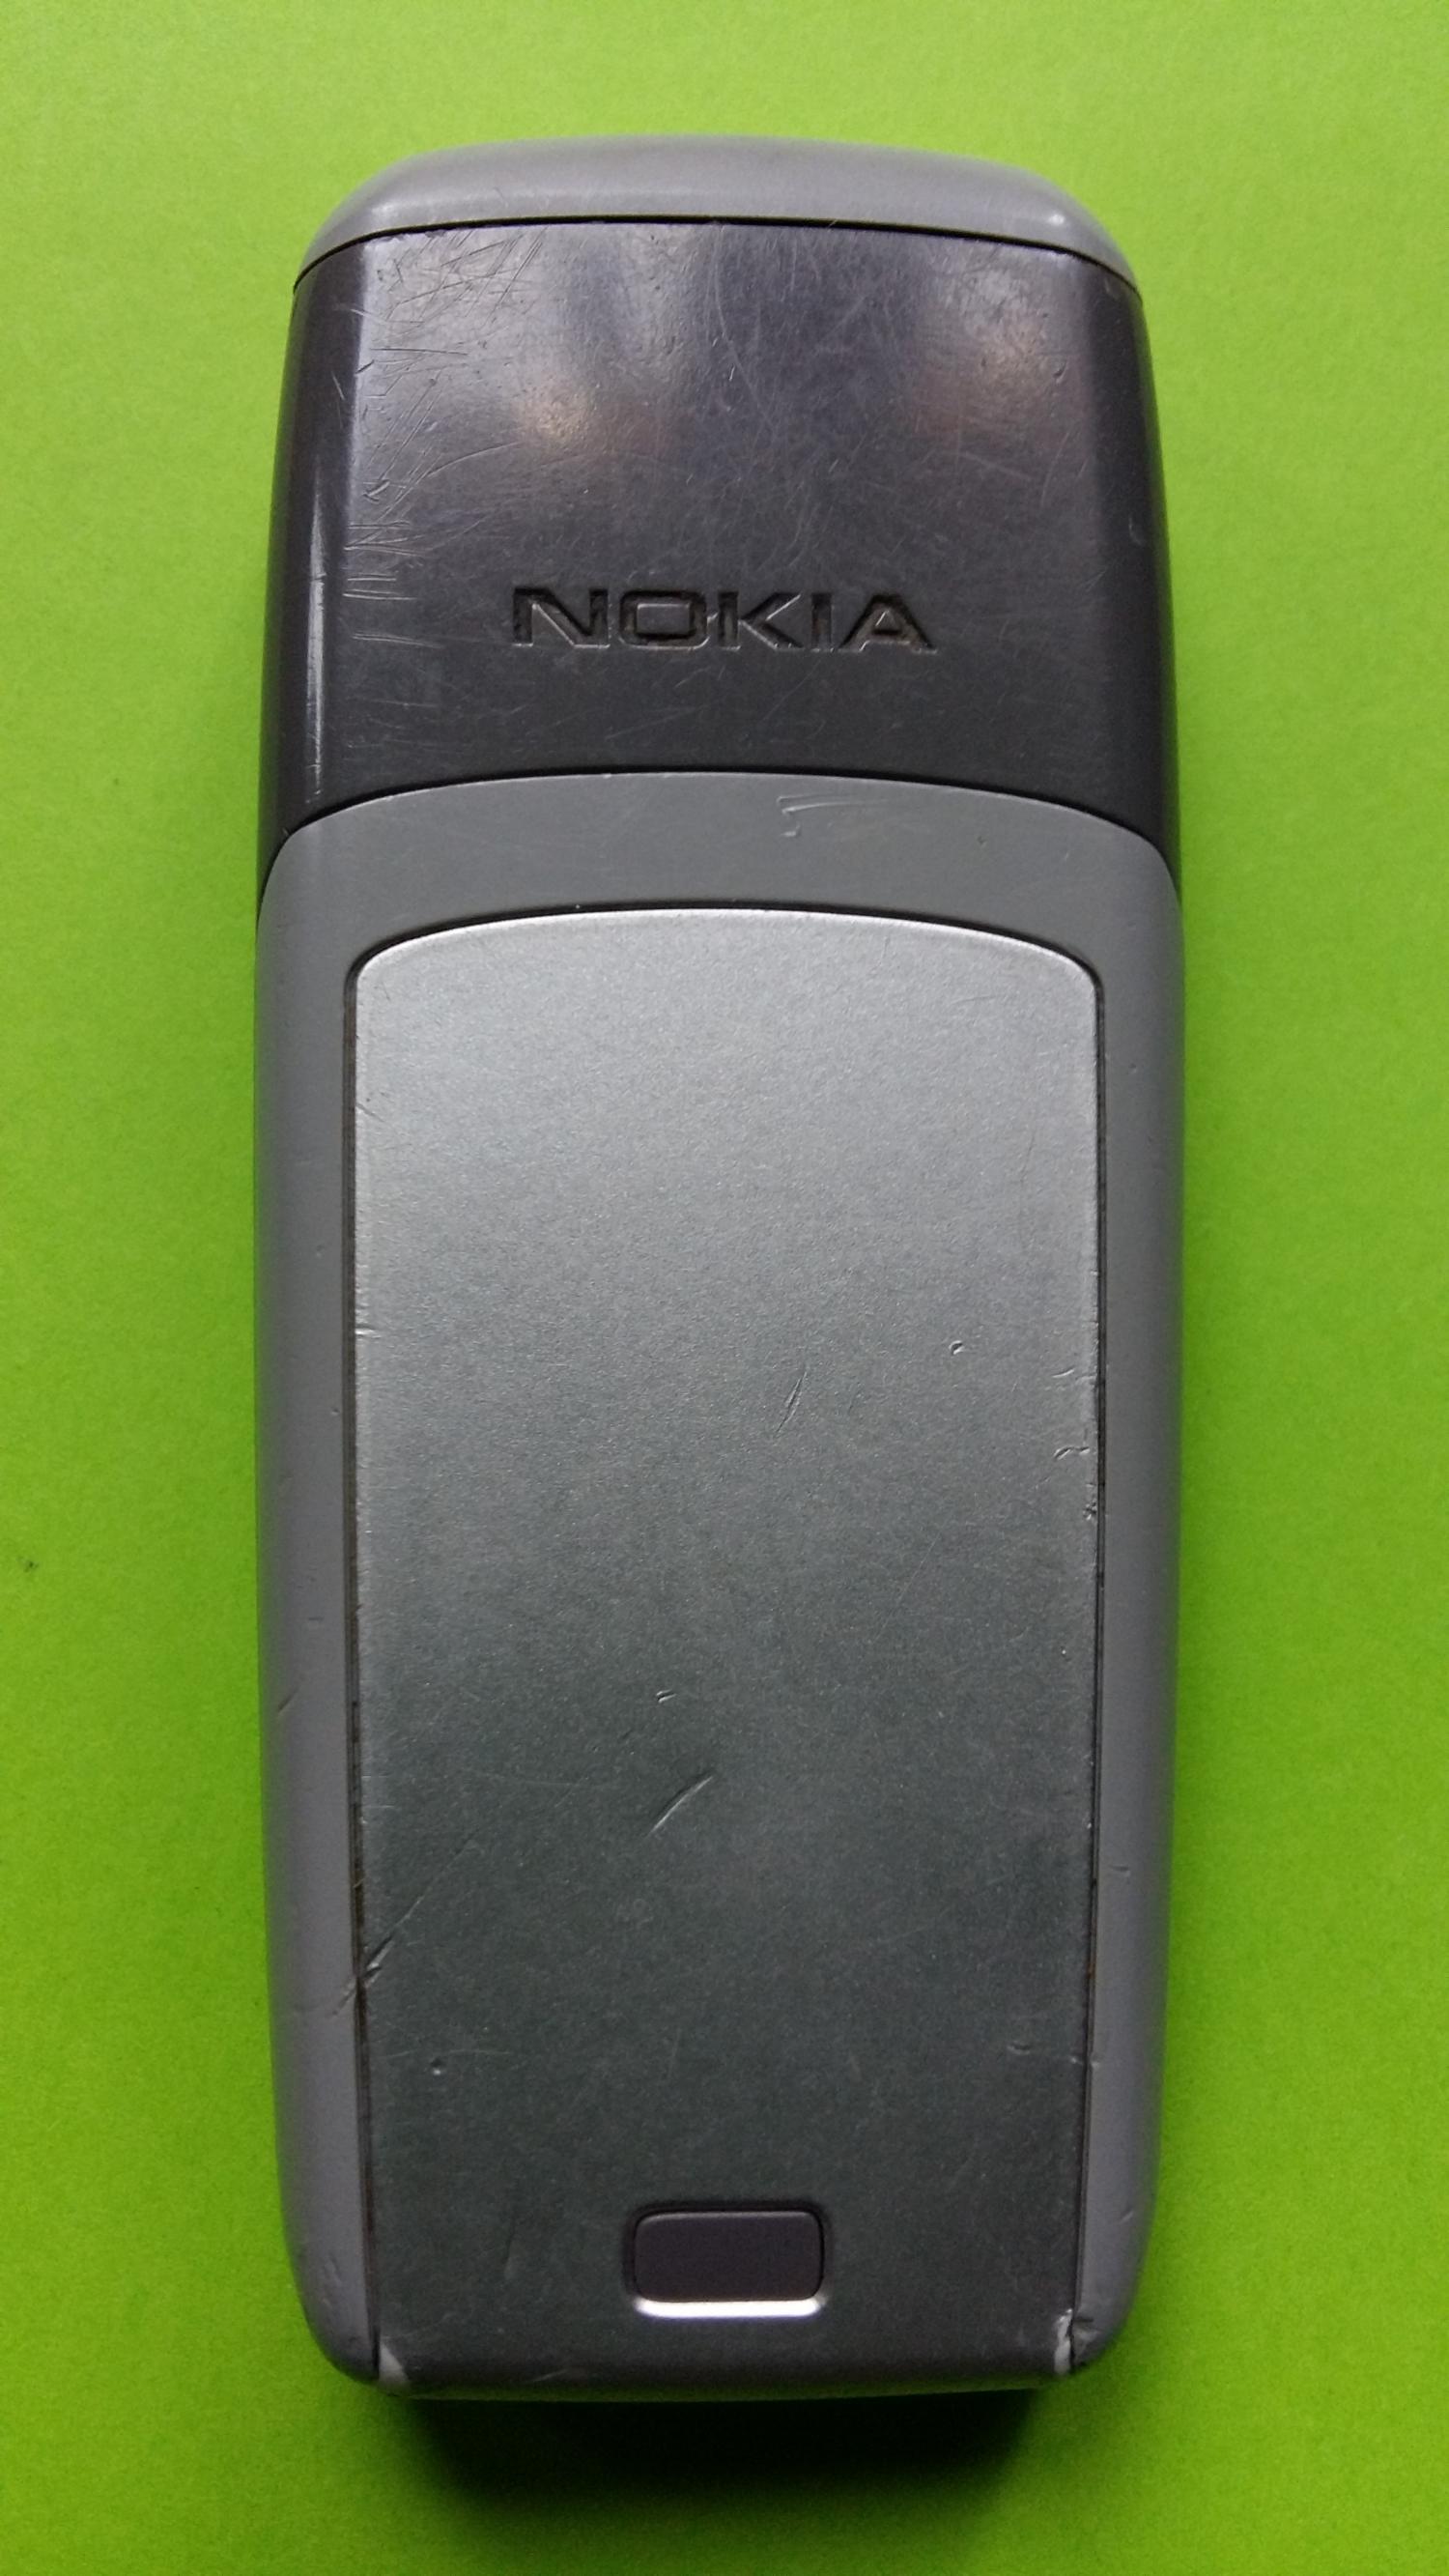 image-7300716-Nokia 1600 (5)2.jpg